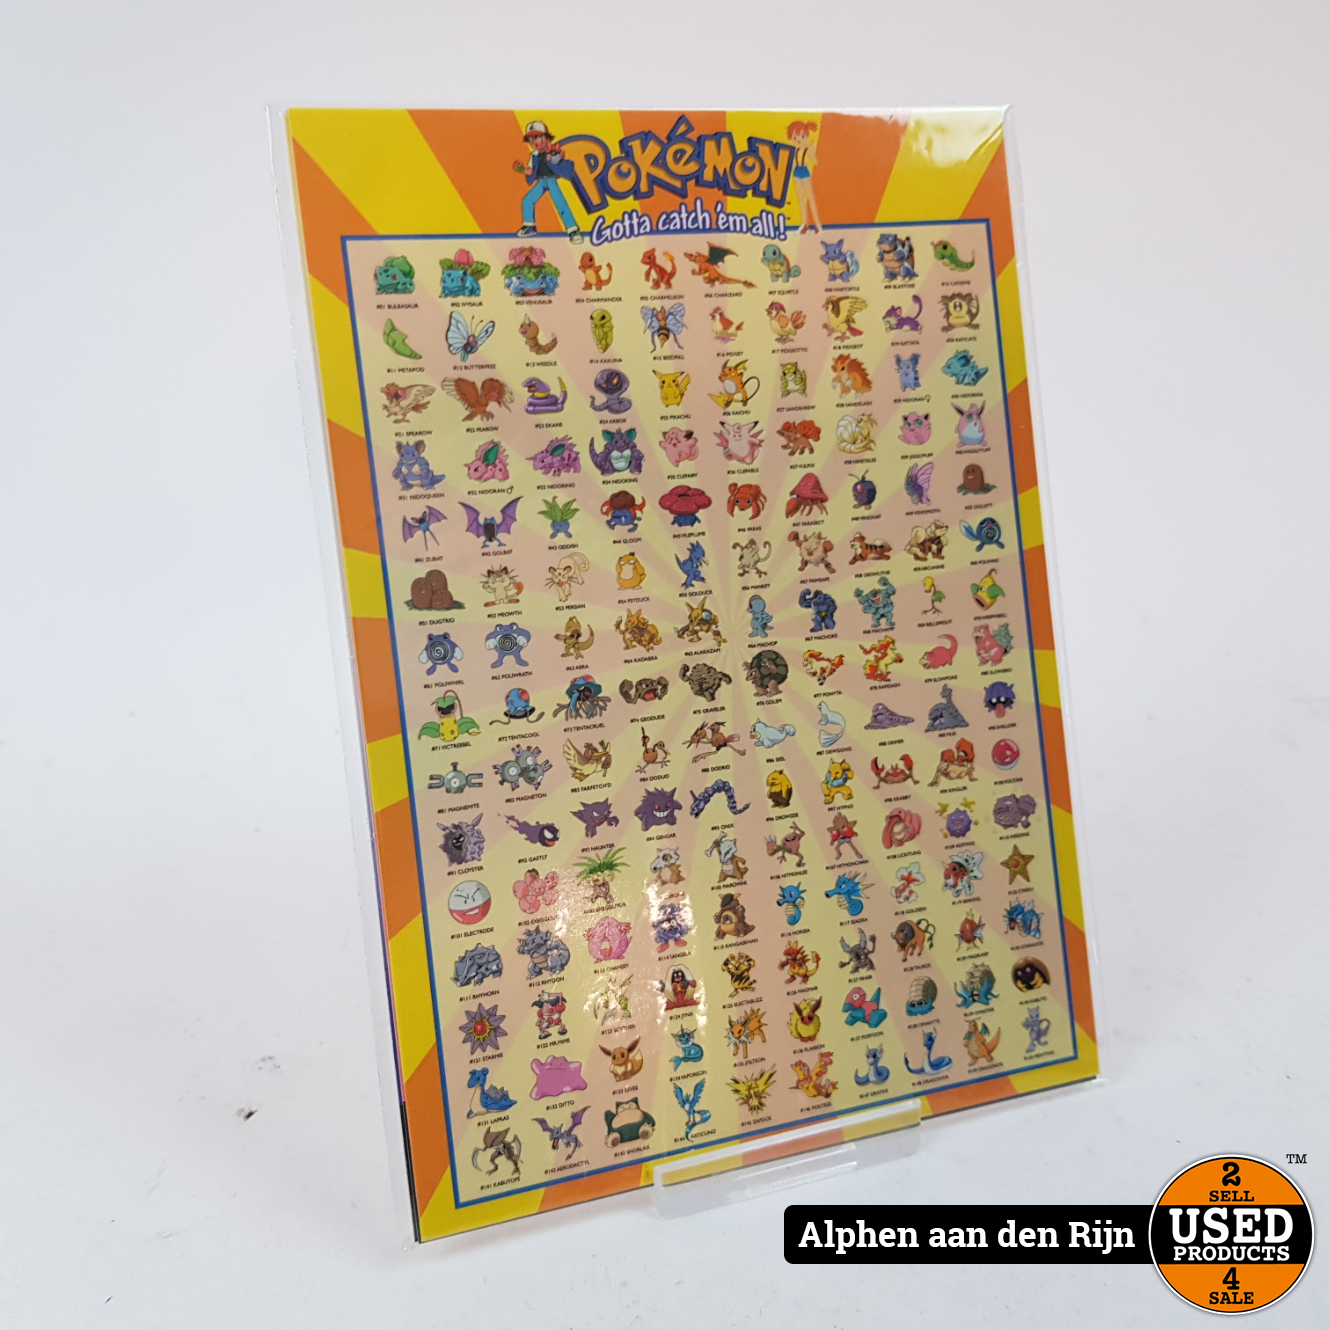 Om toestemming te geven verkouden worden Datum Pokemon kaarten - wenskaarten Origineel Nintendo 1998 - 150 pokemon kaart -  Used Products Alphen aan den Rijn